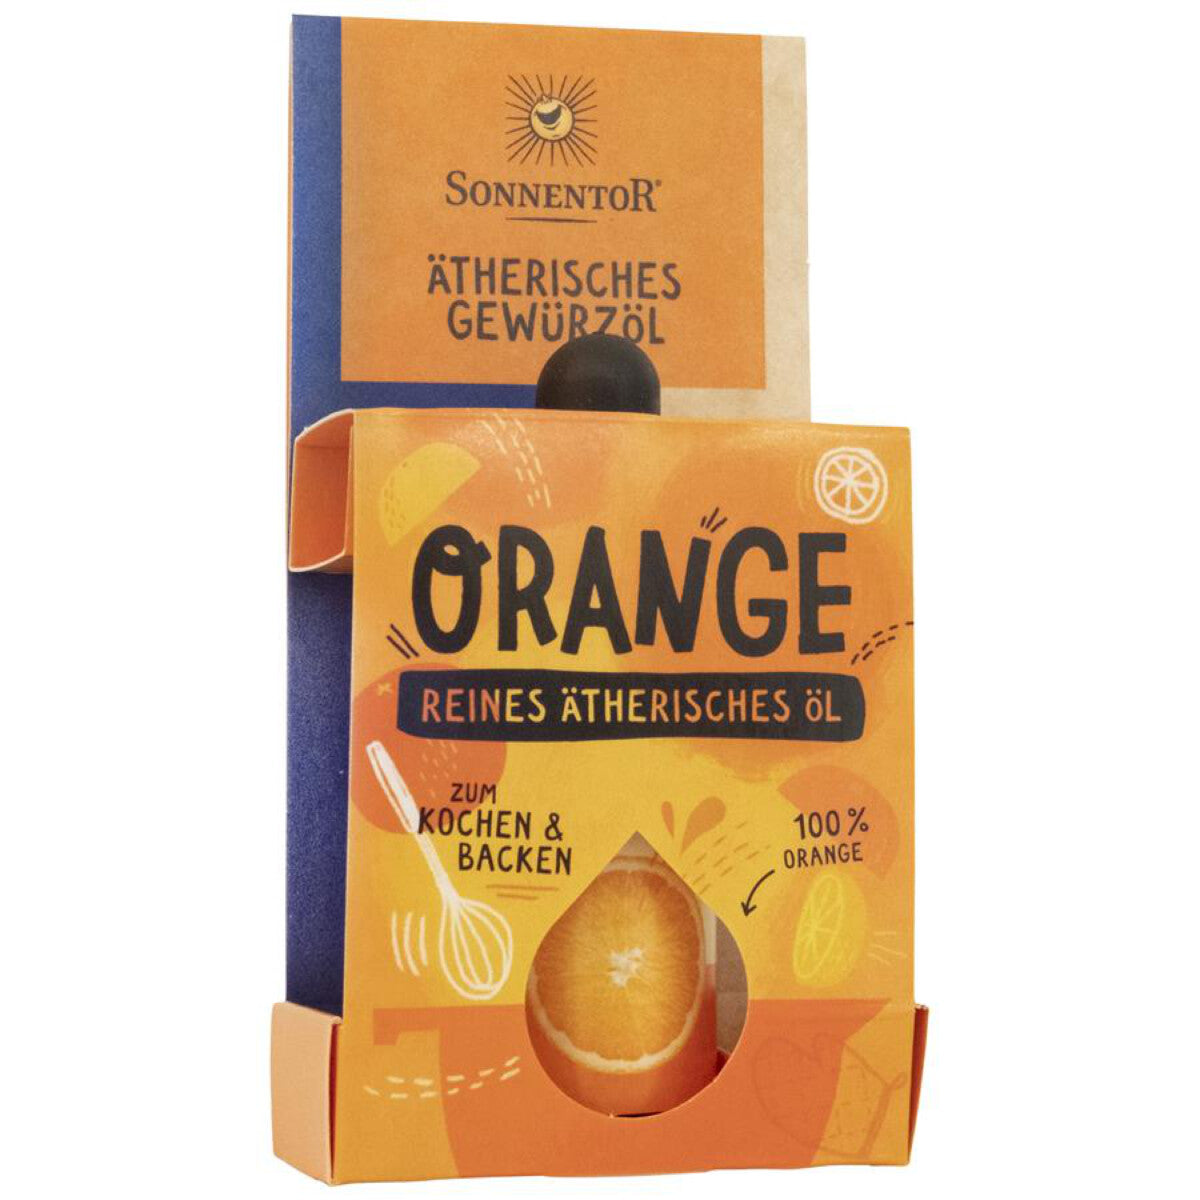 SONNENTOR Orange ätherisches Gewürzöl – 4,5 ml